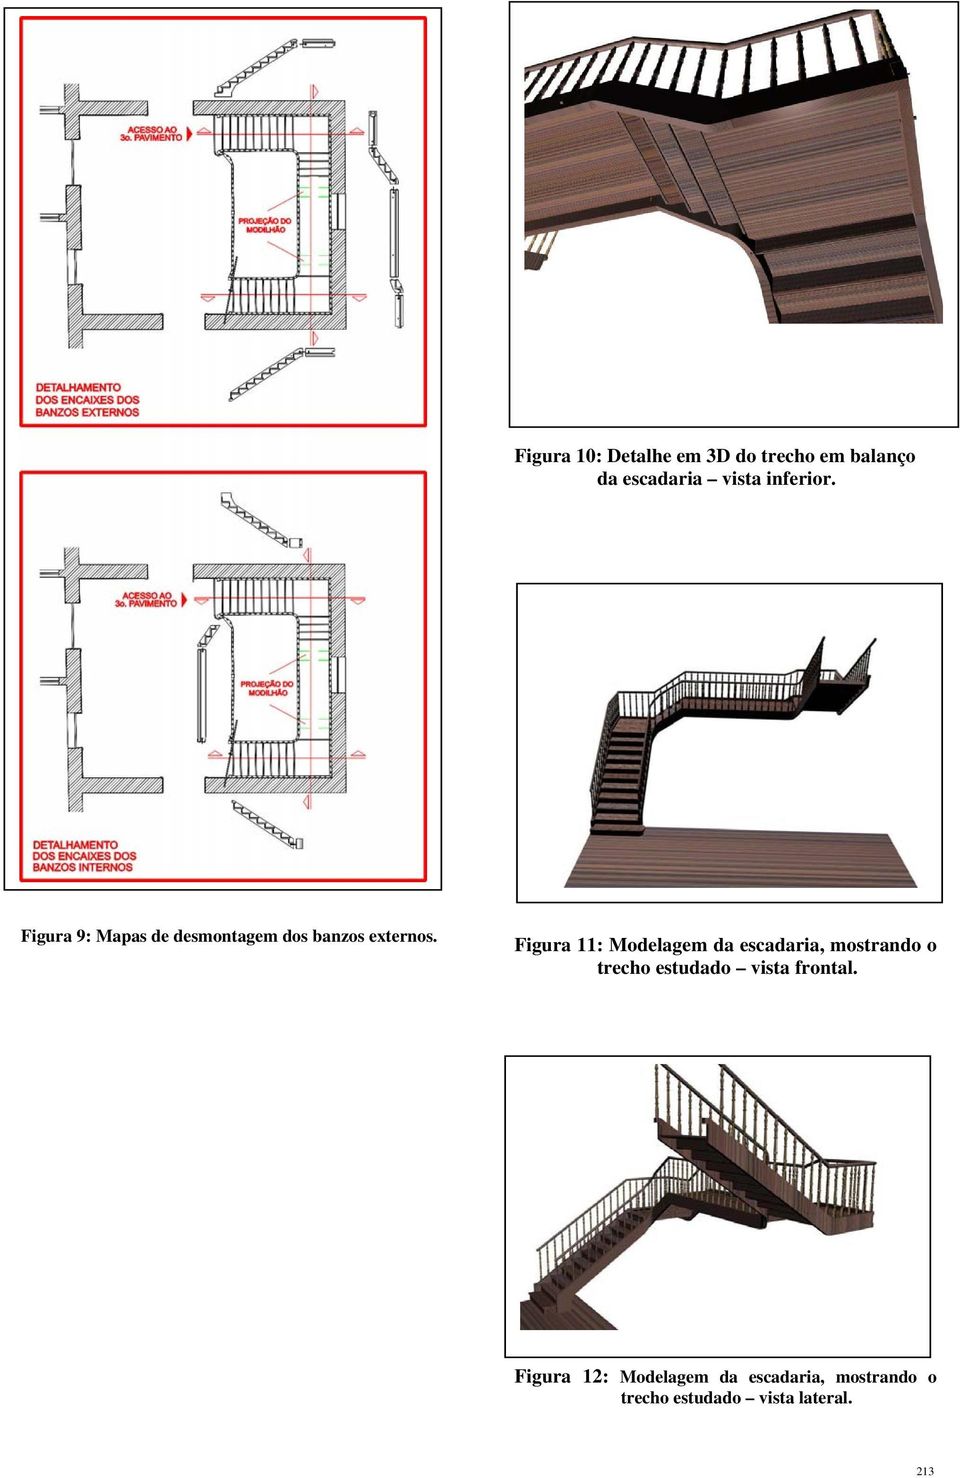 Figura 11: Modelagem da escadaria, mostrando o trecho estudado vista